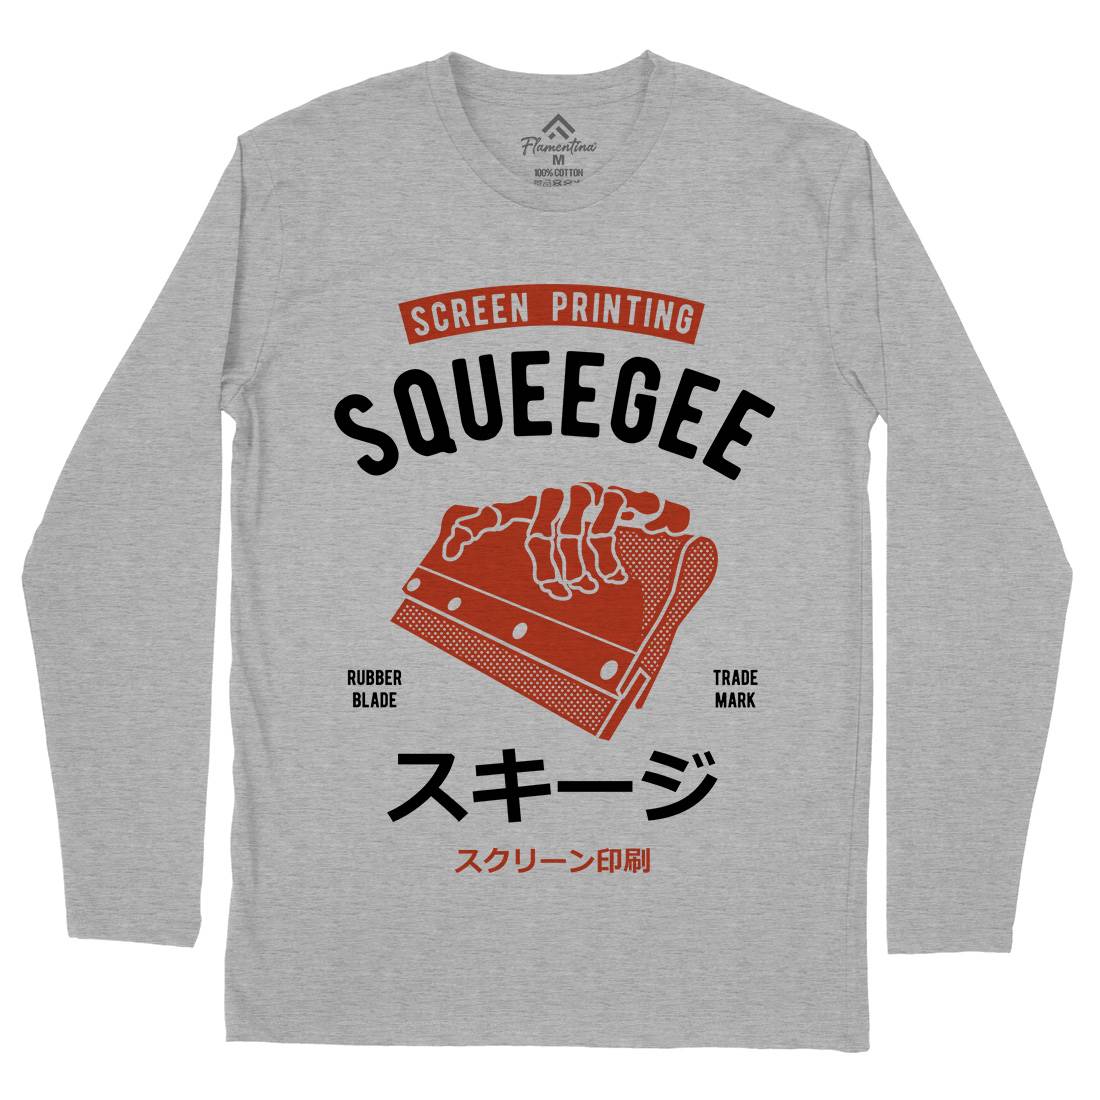 Squeegee Social Club Mens Long Sleeve T-Shirt Work A282